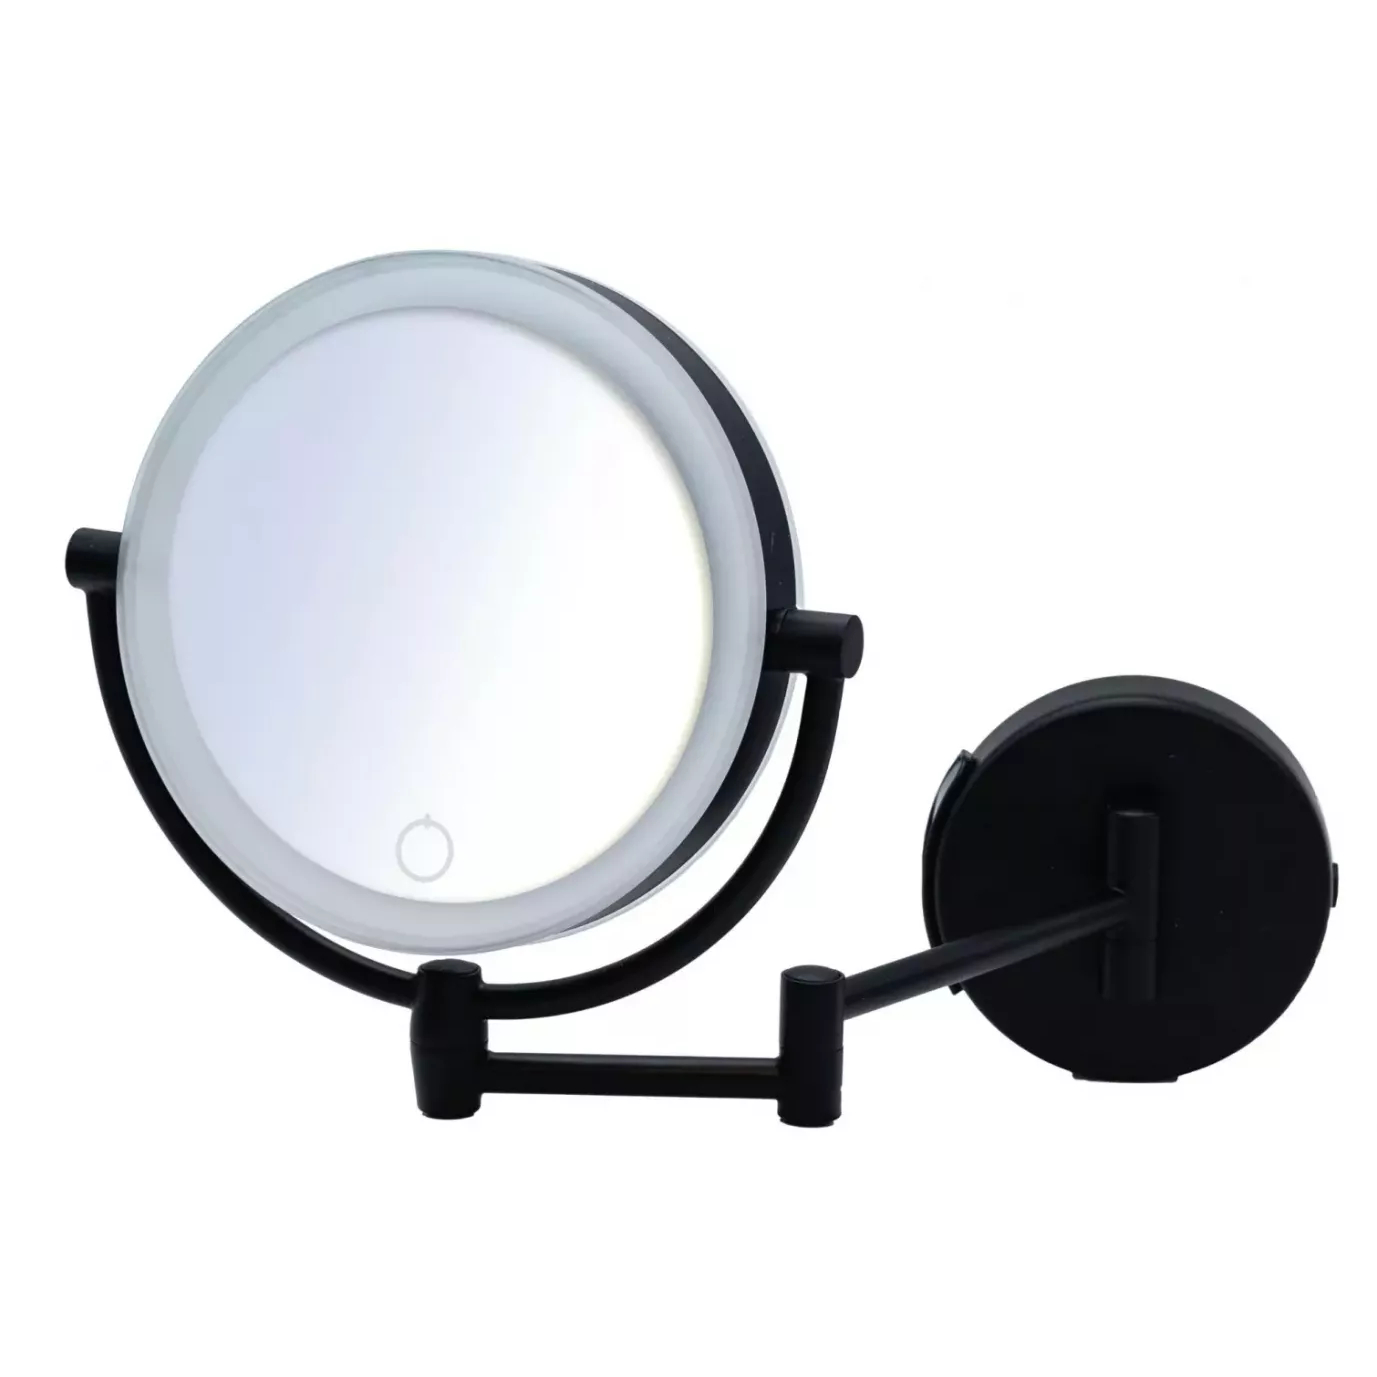 Зеркало косметическое Ridder Shuri с подсветкой, 1x/5x увеличение, черный зеркало косметическое ridder aurora с подсветкой 1x 5x увеличение хром